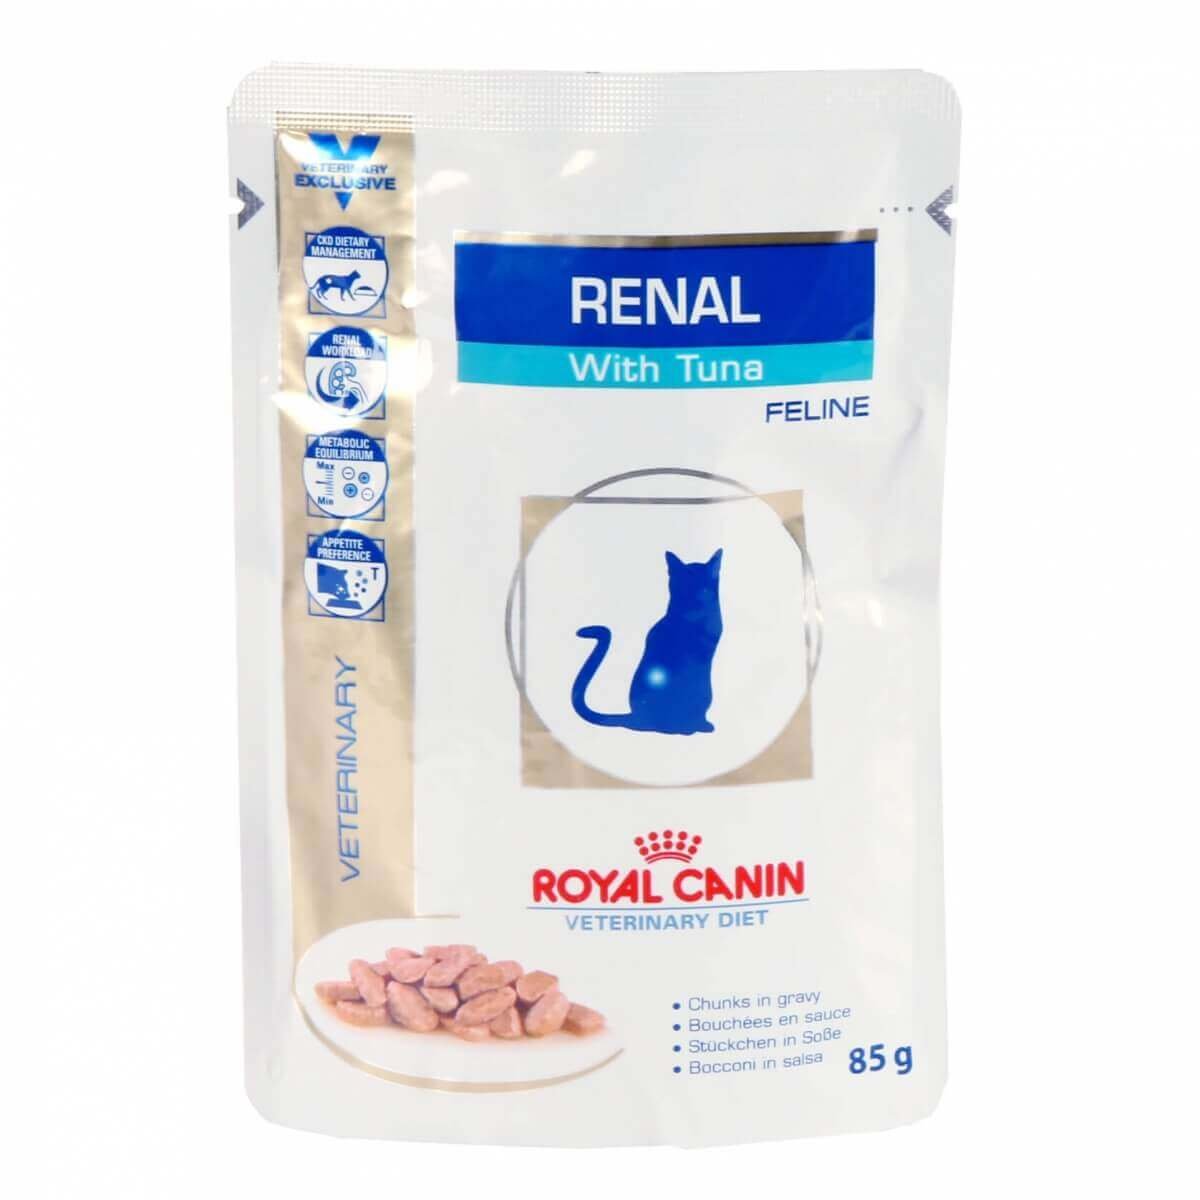 Royal Canin Veterinary Diet Feline Renal Pack, 12 x 85g